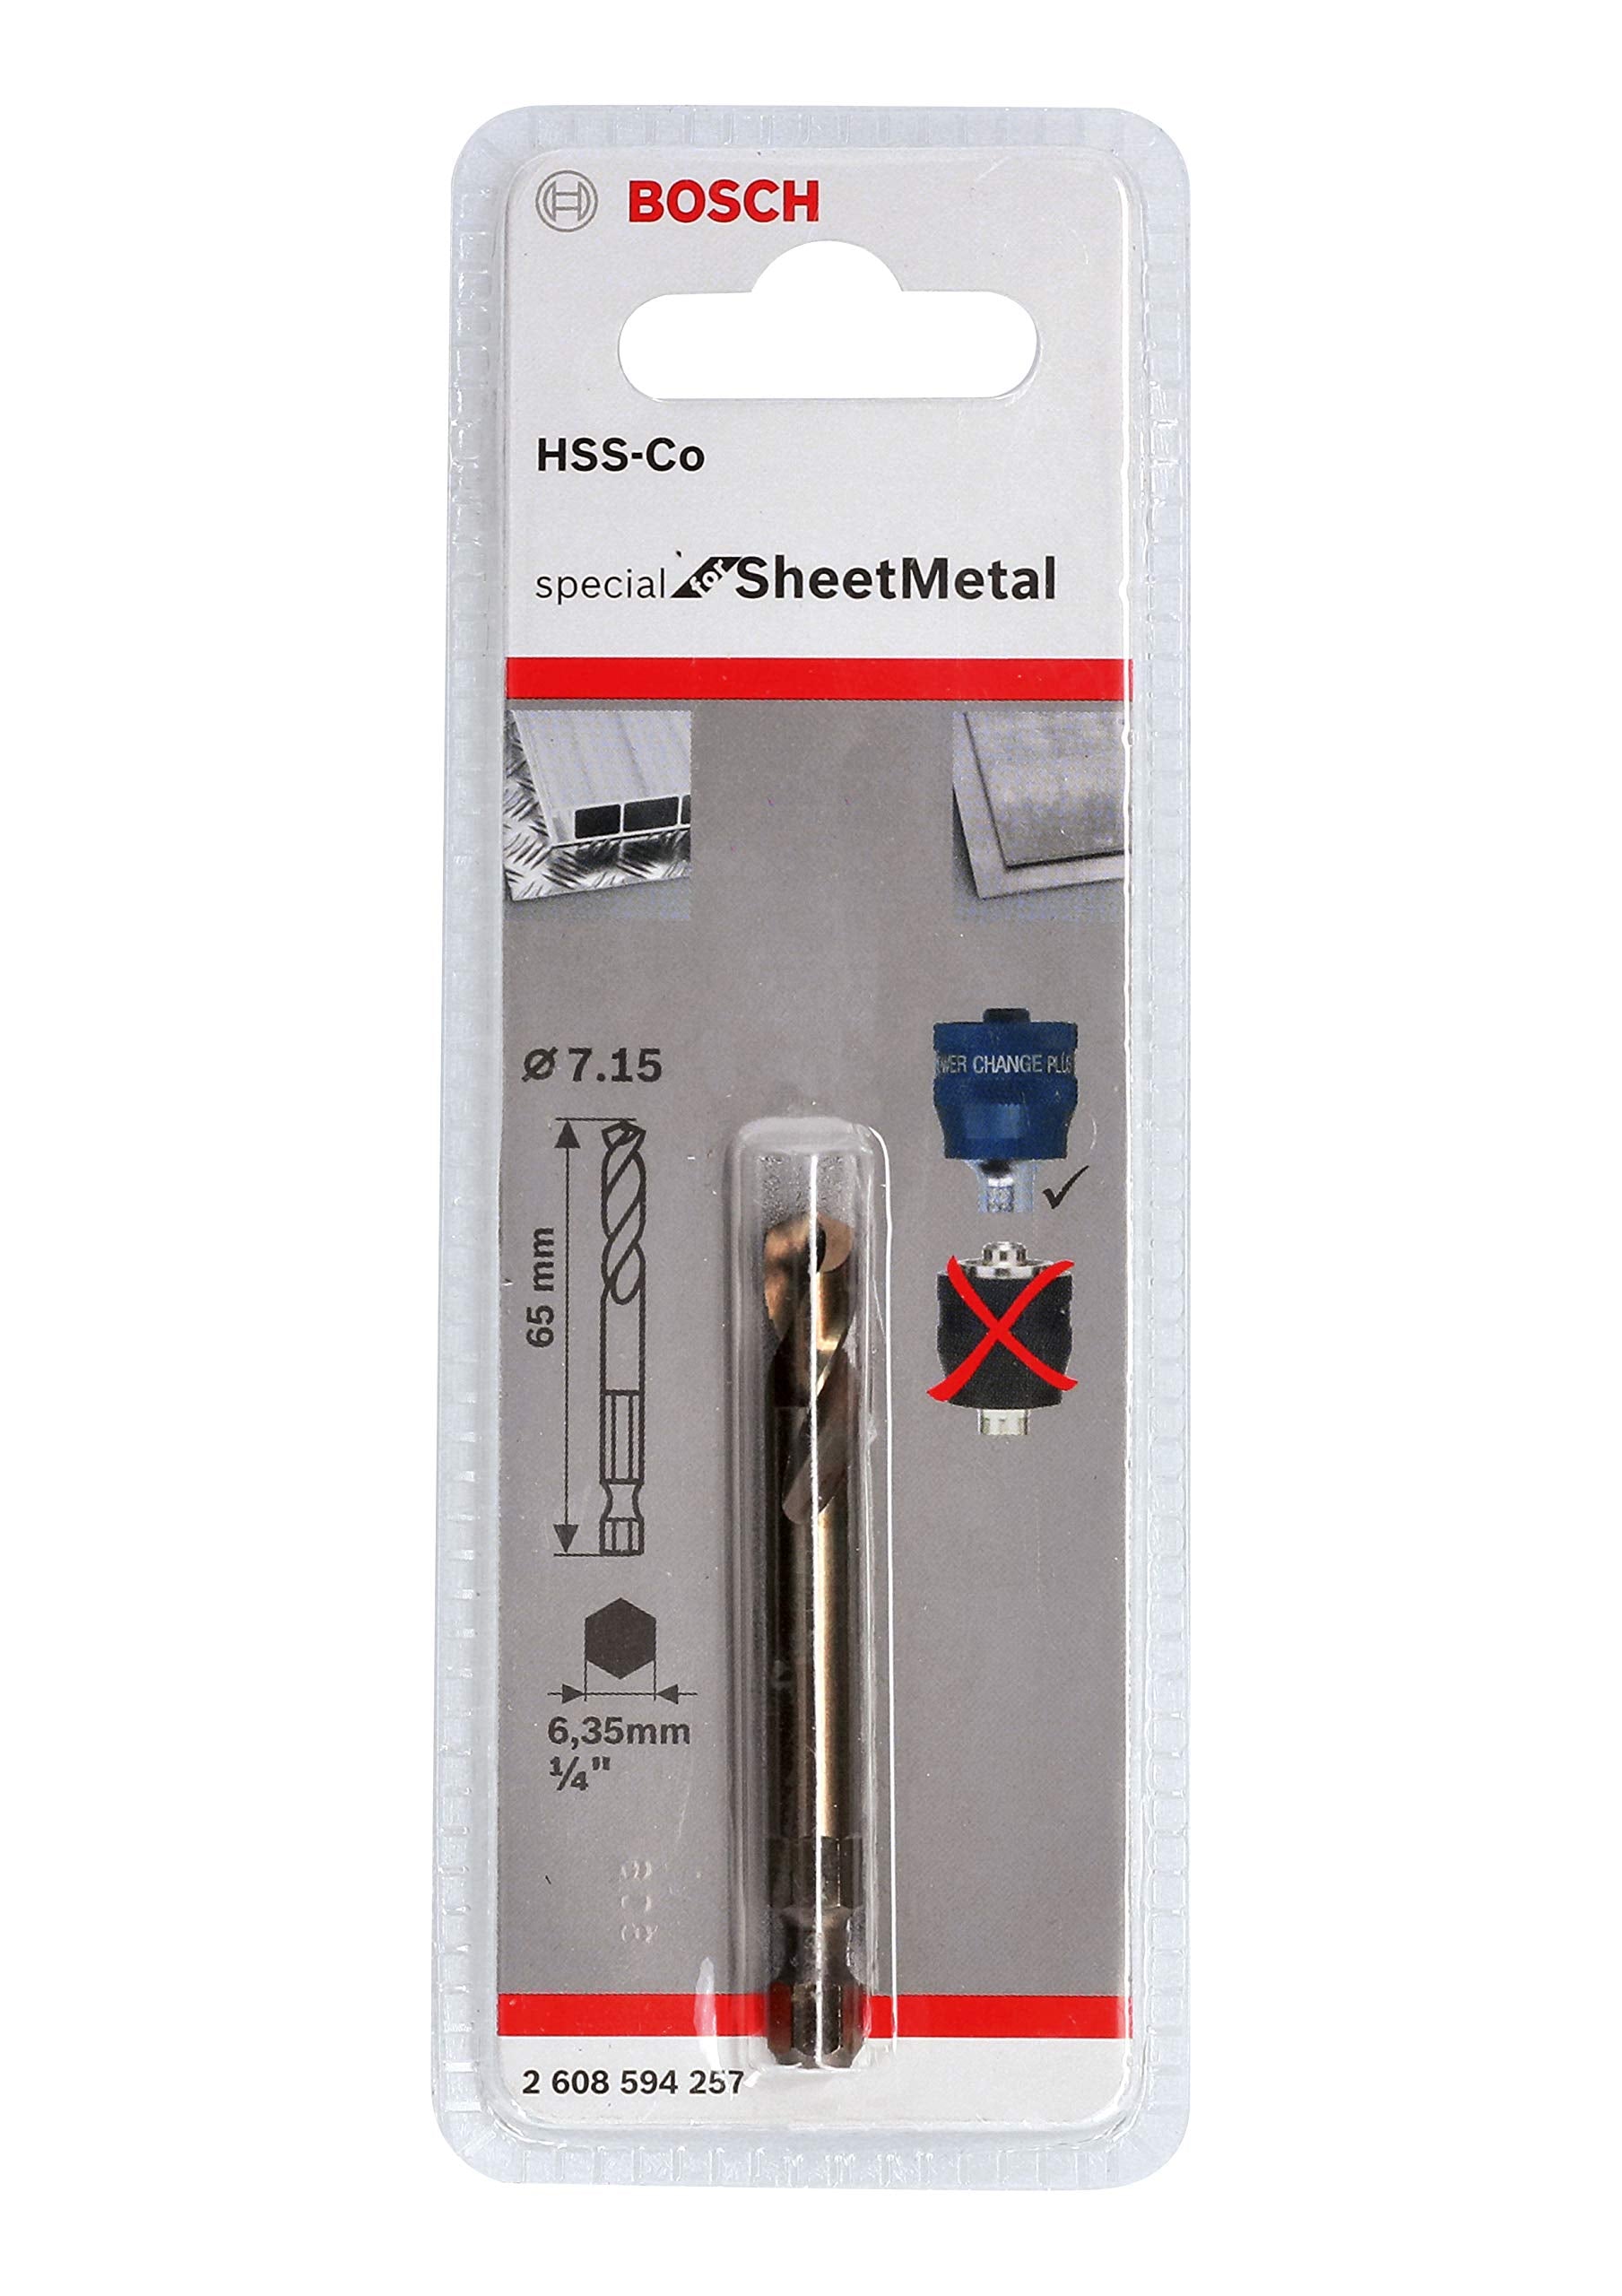 Bosch Pilot drill Plus HSS-Co 7,15 x 65 mm 2608594257 Power Tool Services